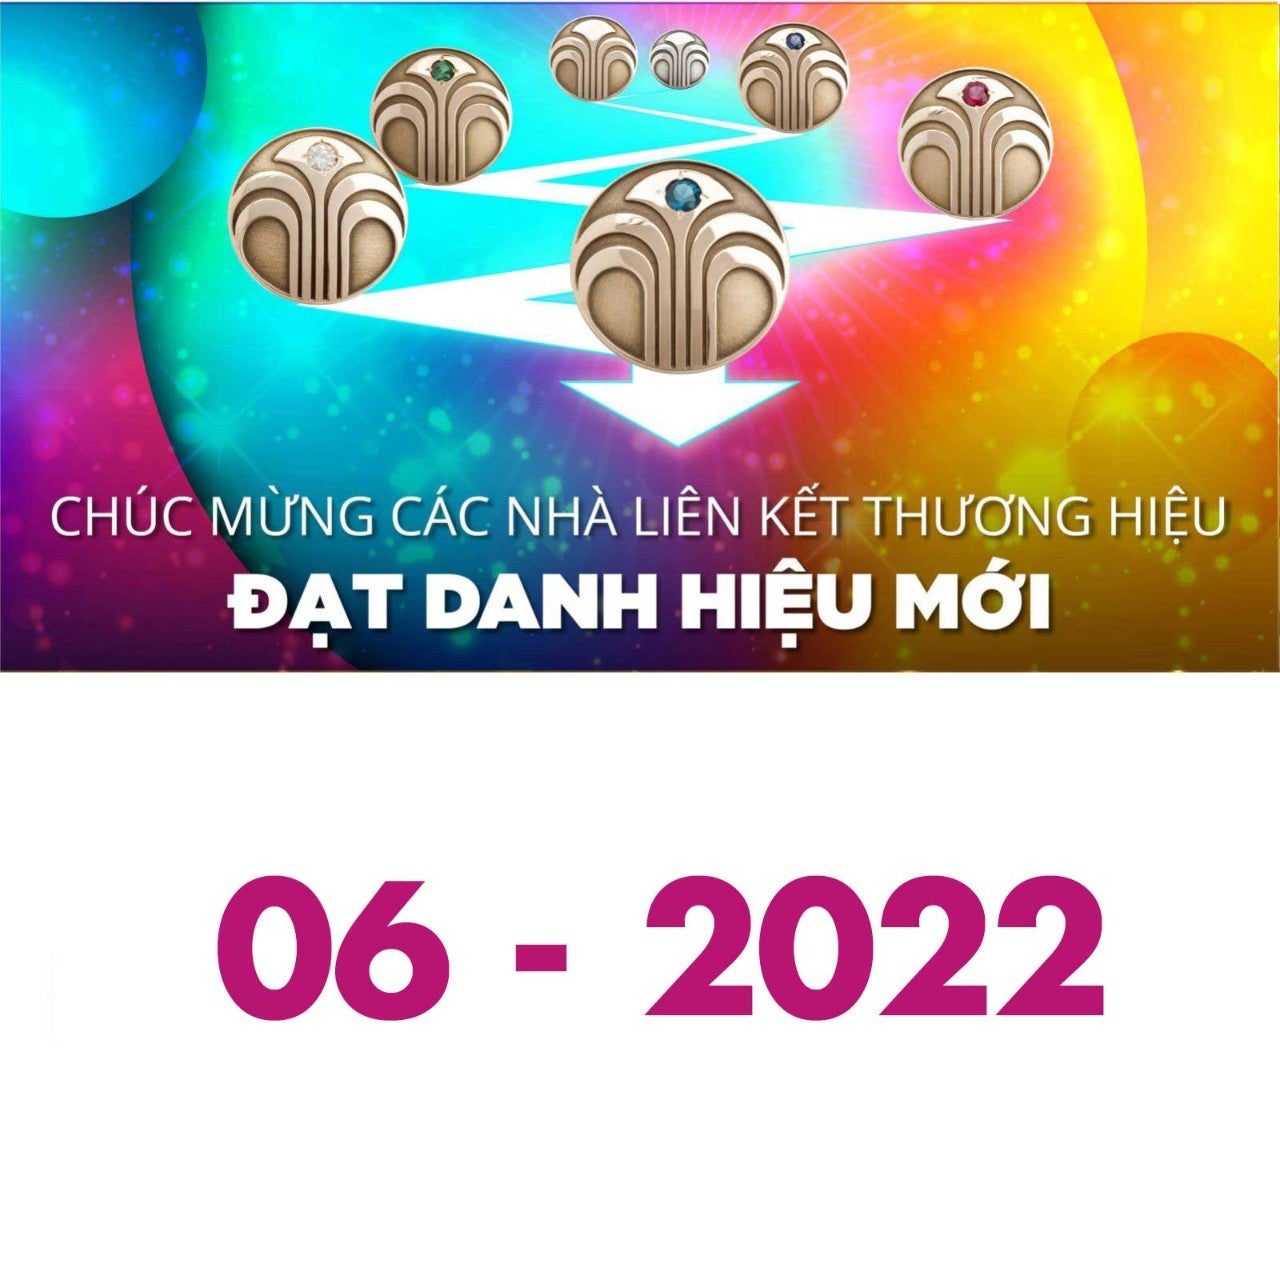 202206